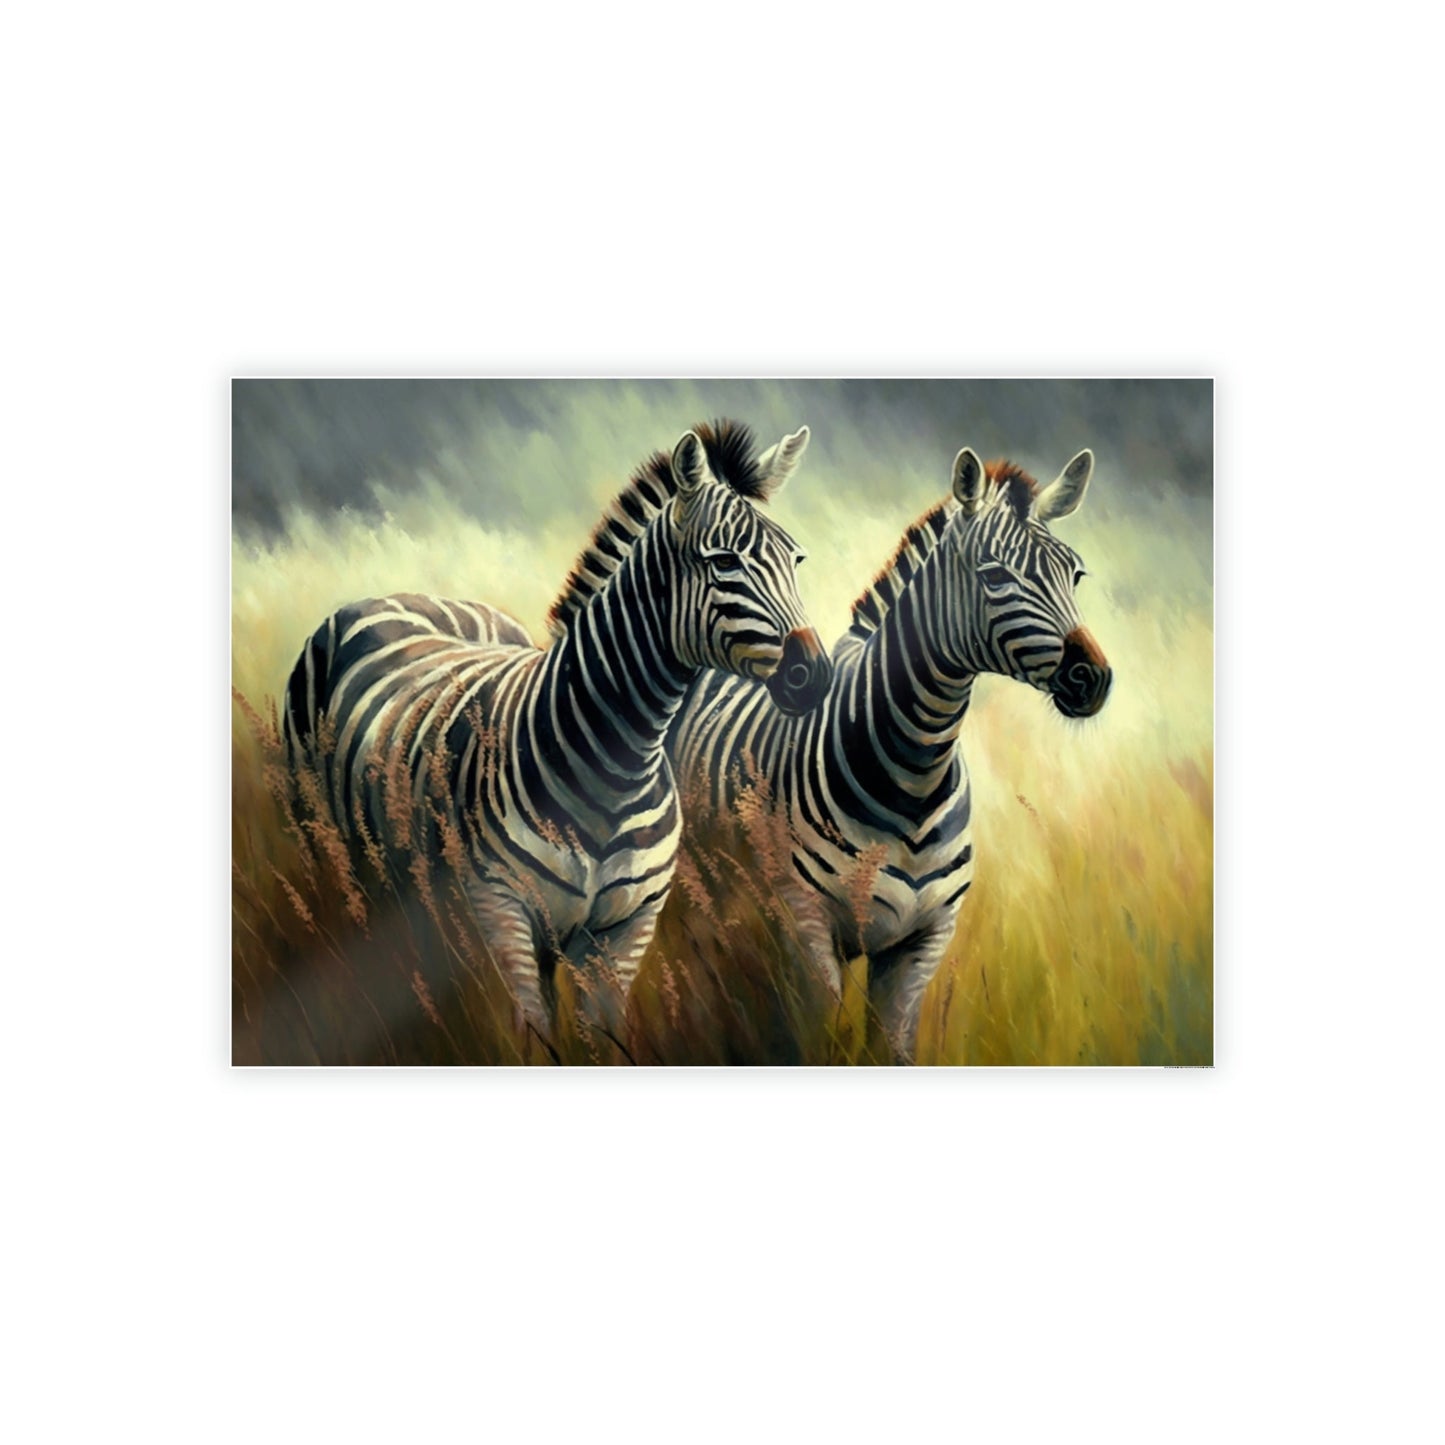 Wilderness Wonders: The Majestic Zebras